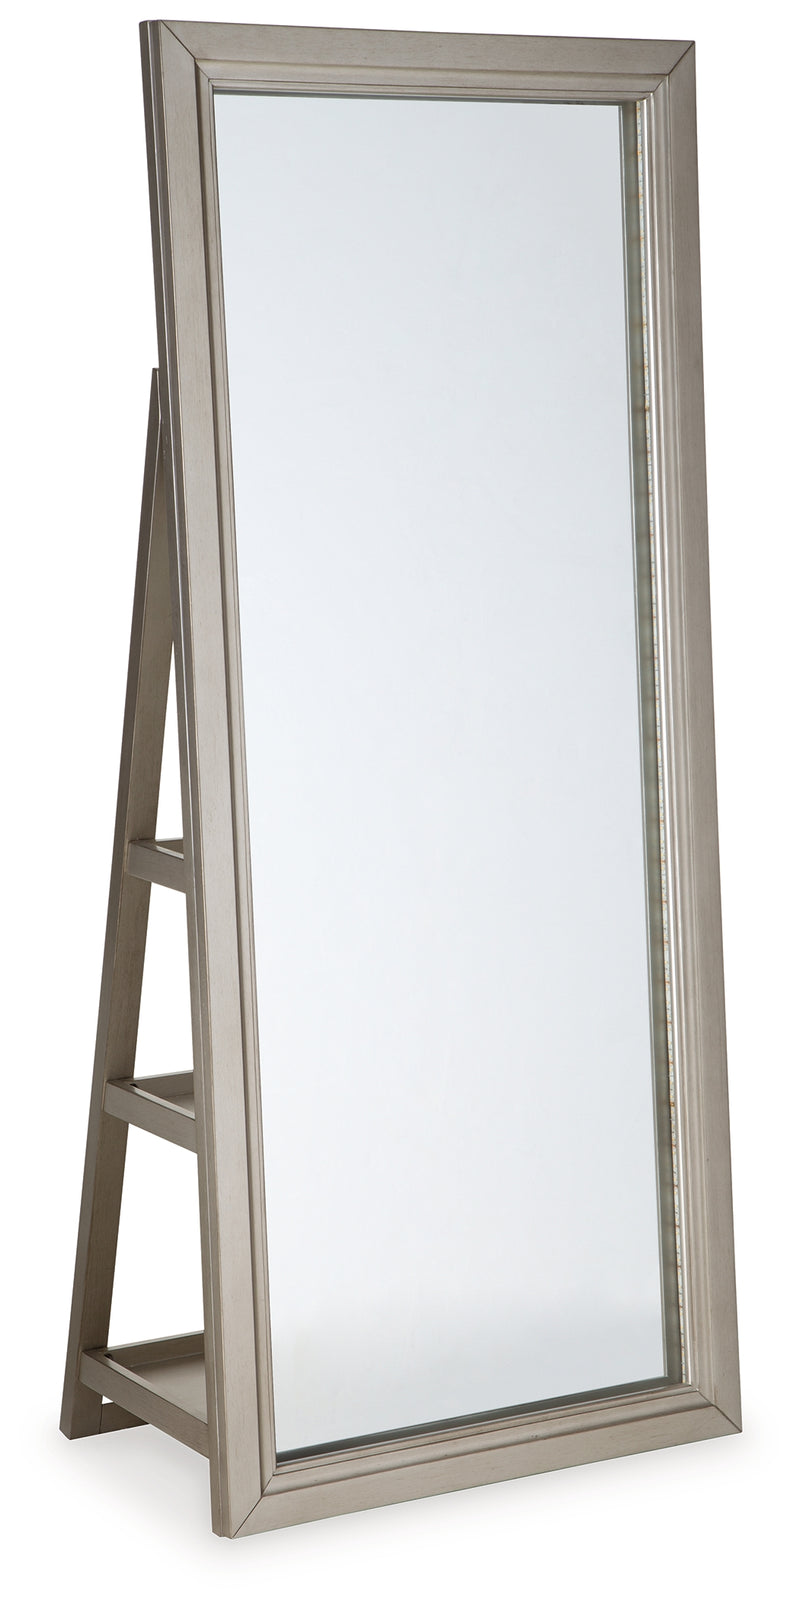 Evesen Champagne Floor Standing Mirror With Storage